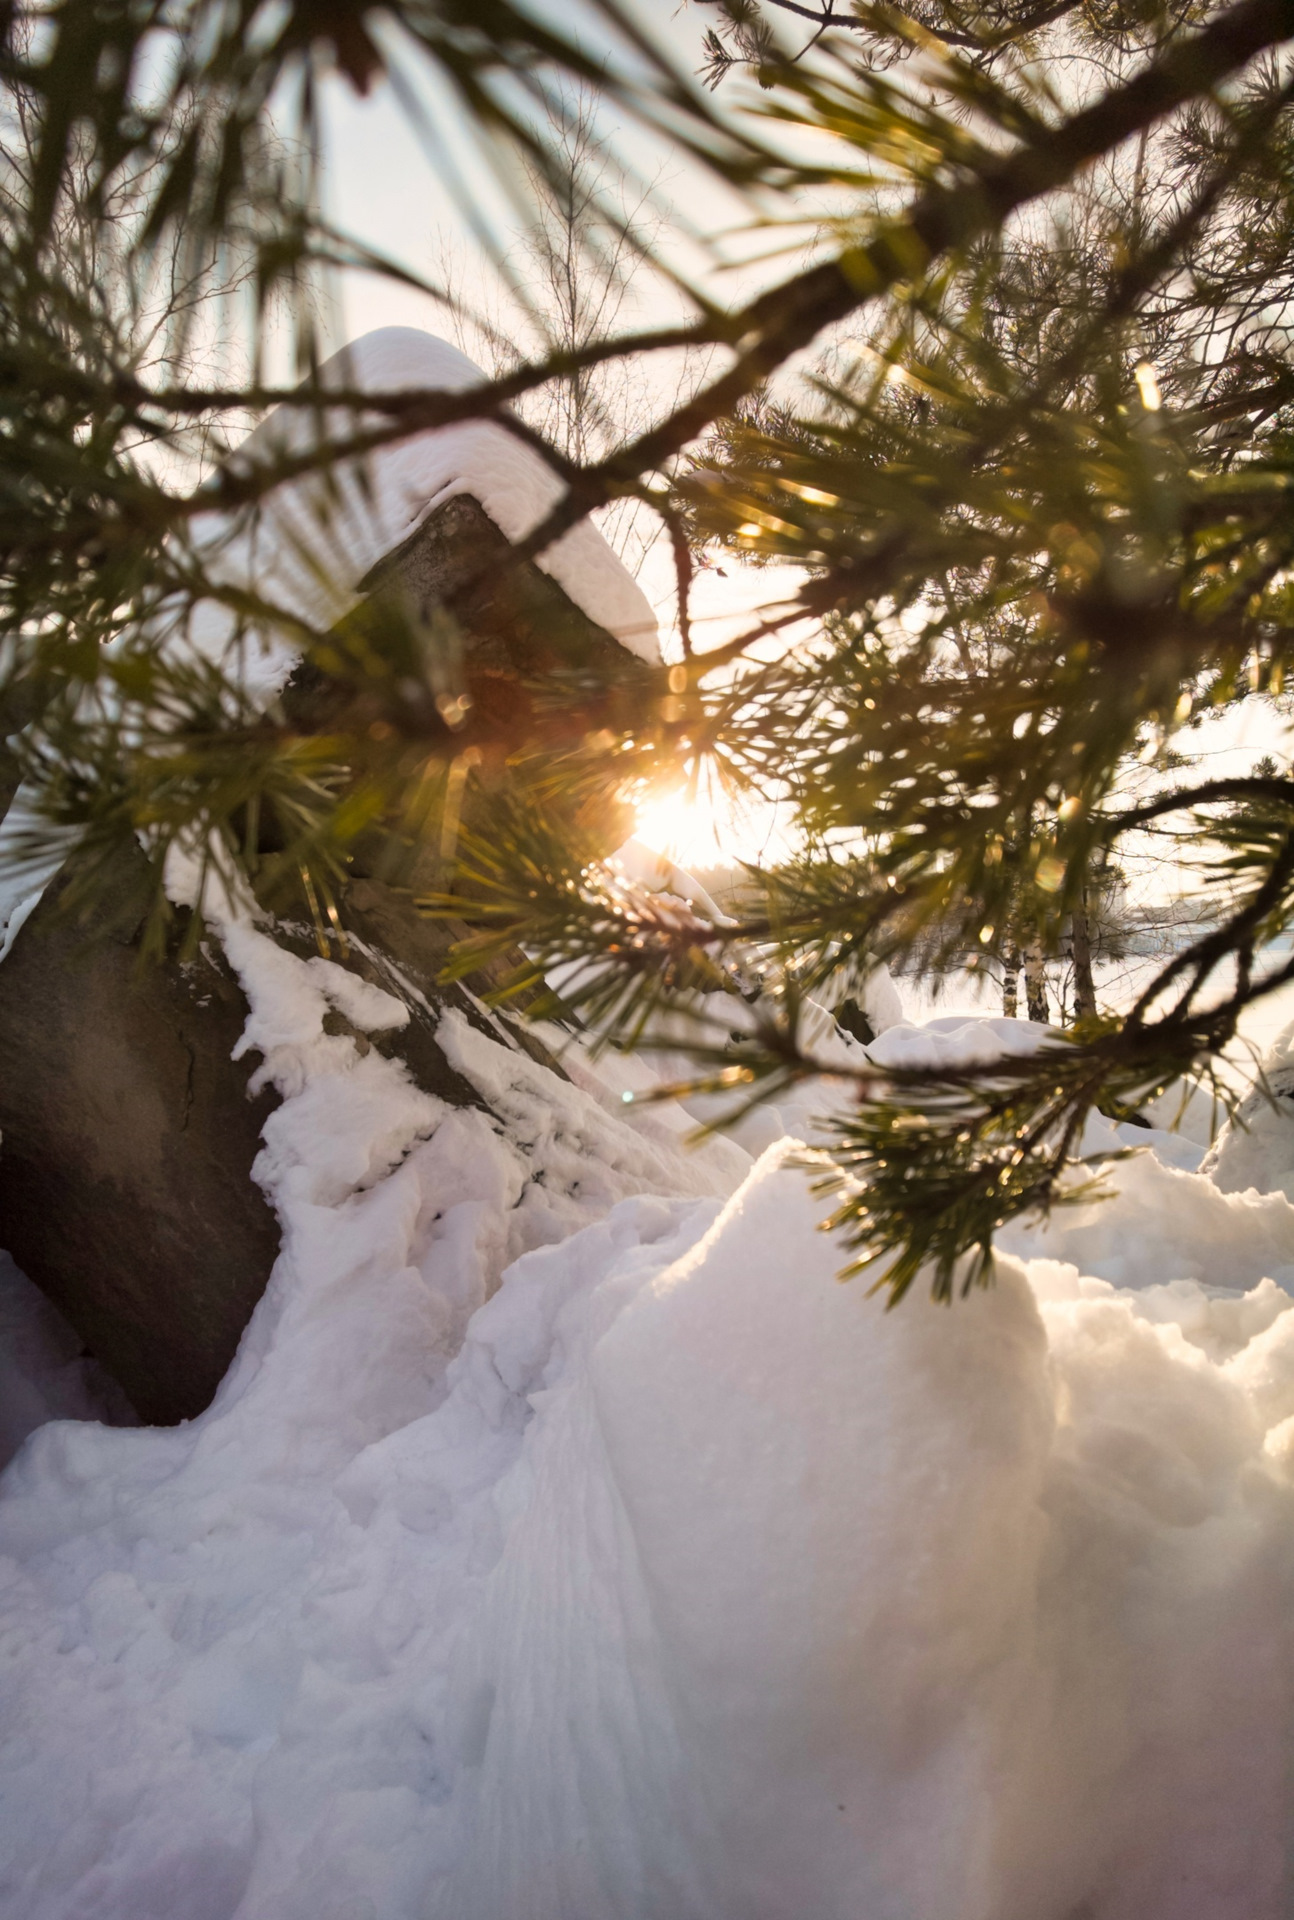 Не видевшие нашей зимы. Зима фото на телефон. Дзержинский карьер крещение. Карьер зимой. Канск. Снег, солнце, блики, деревья.